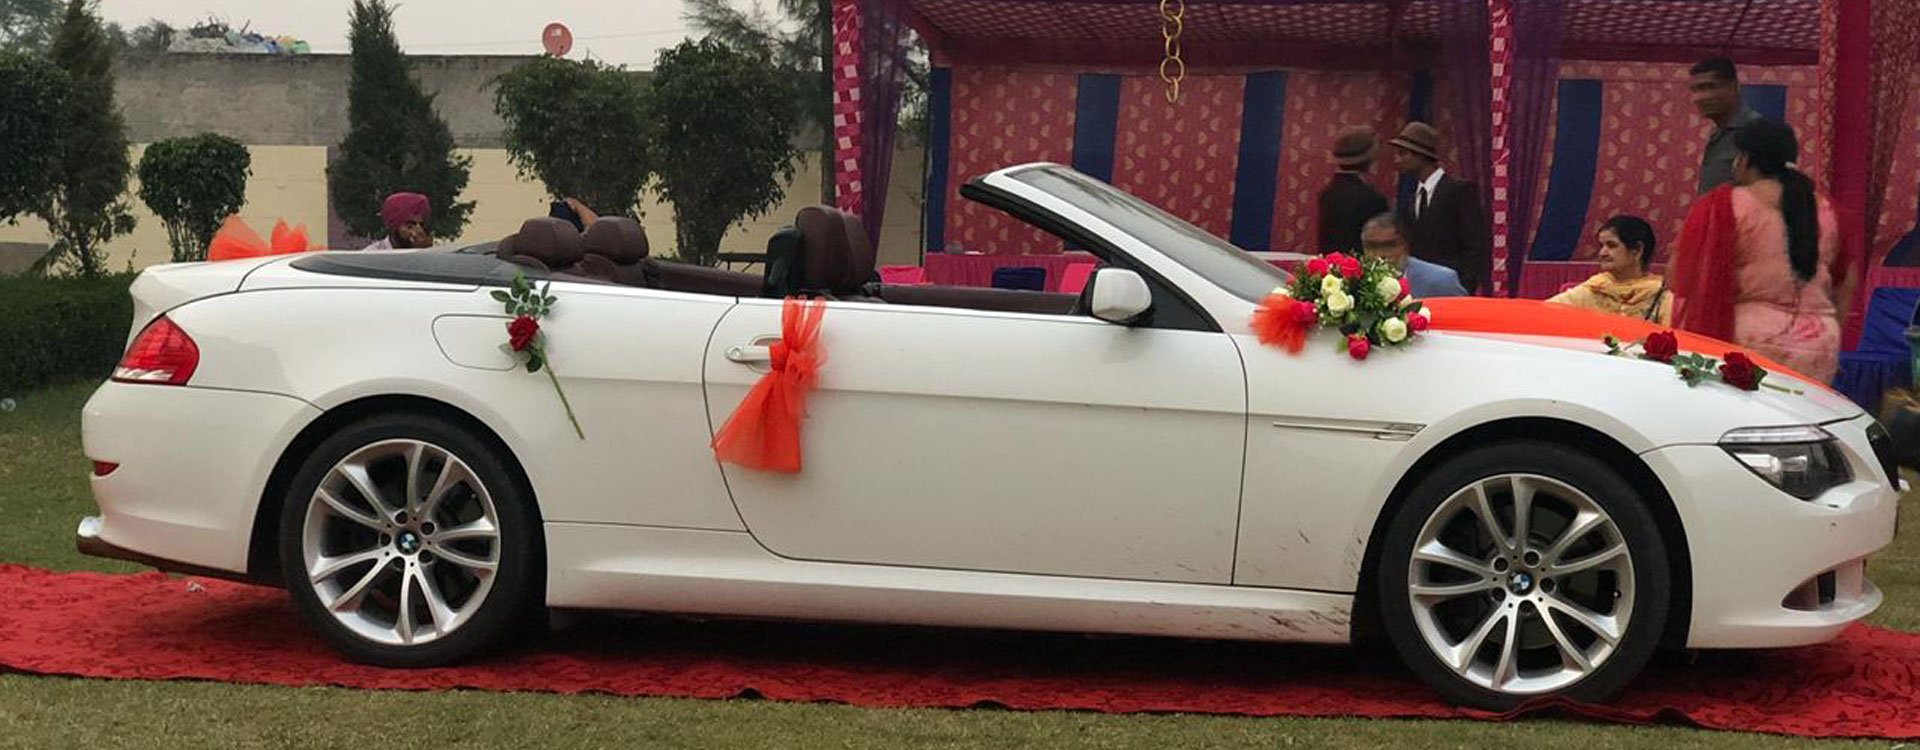 Luxury Wedding Cars|Vehicle Hire|Travel